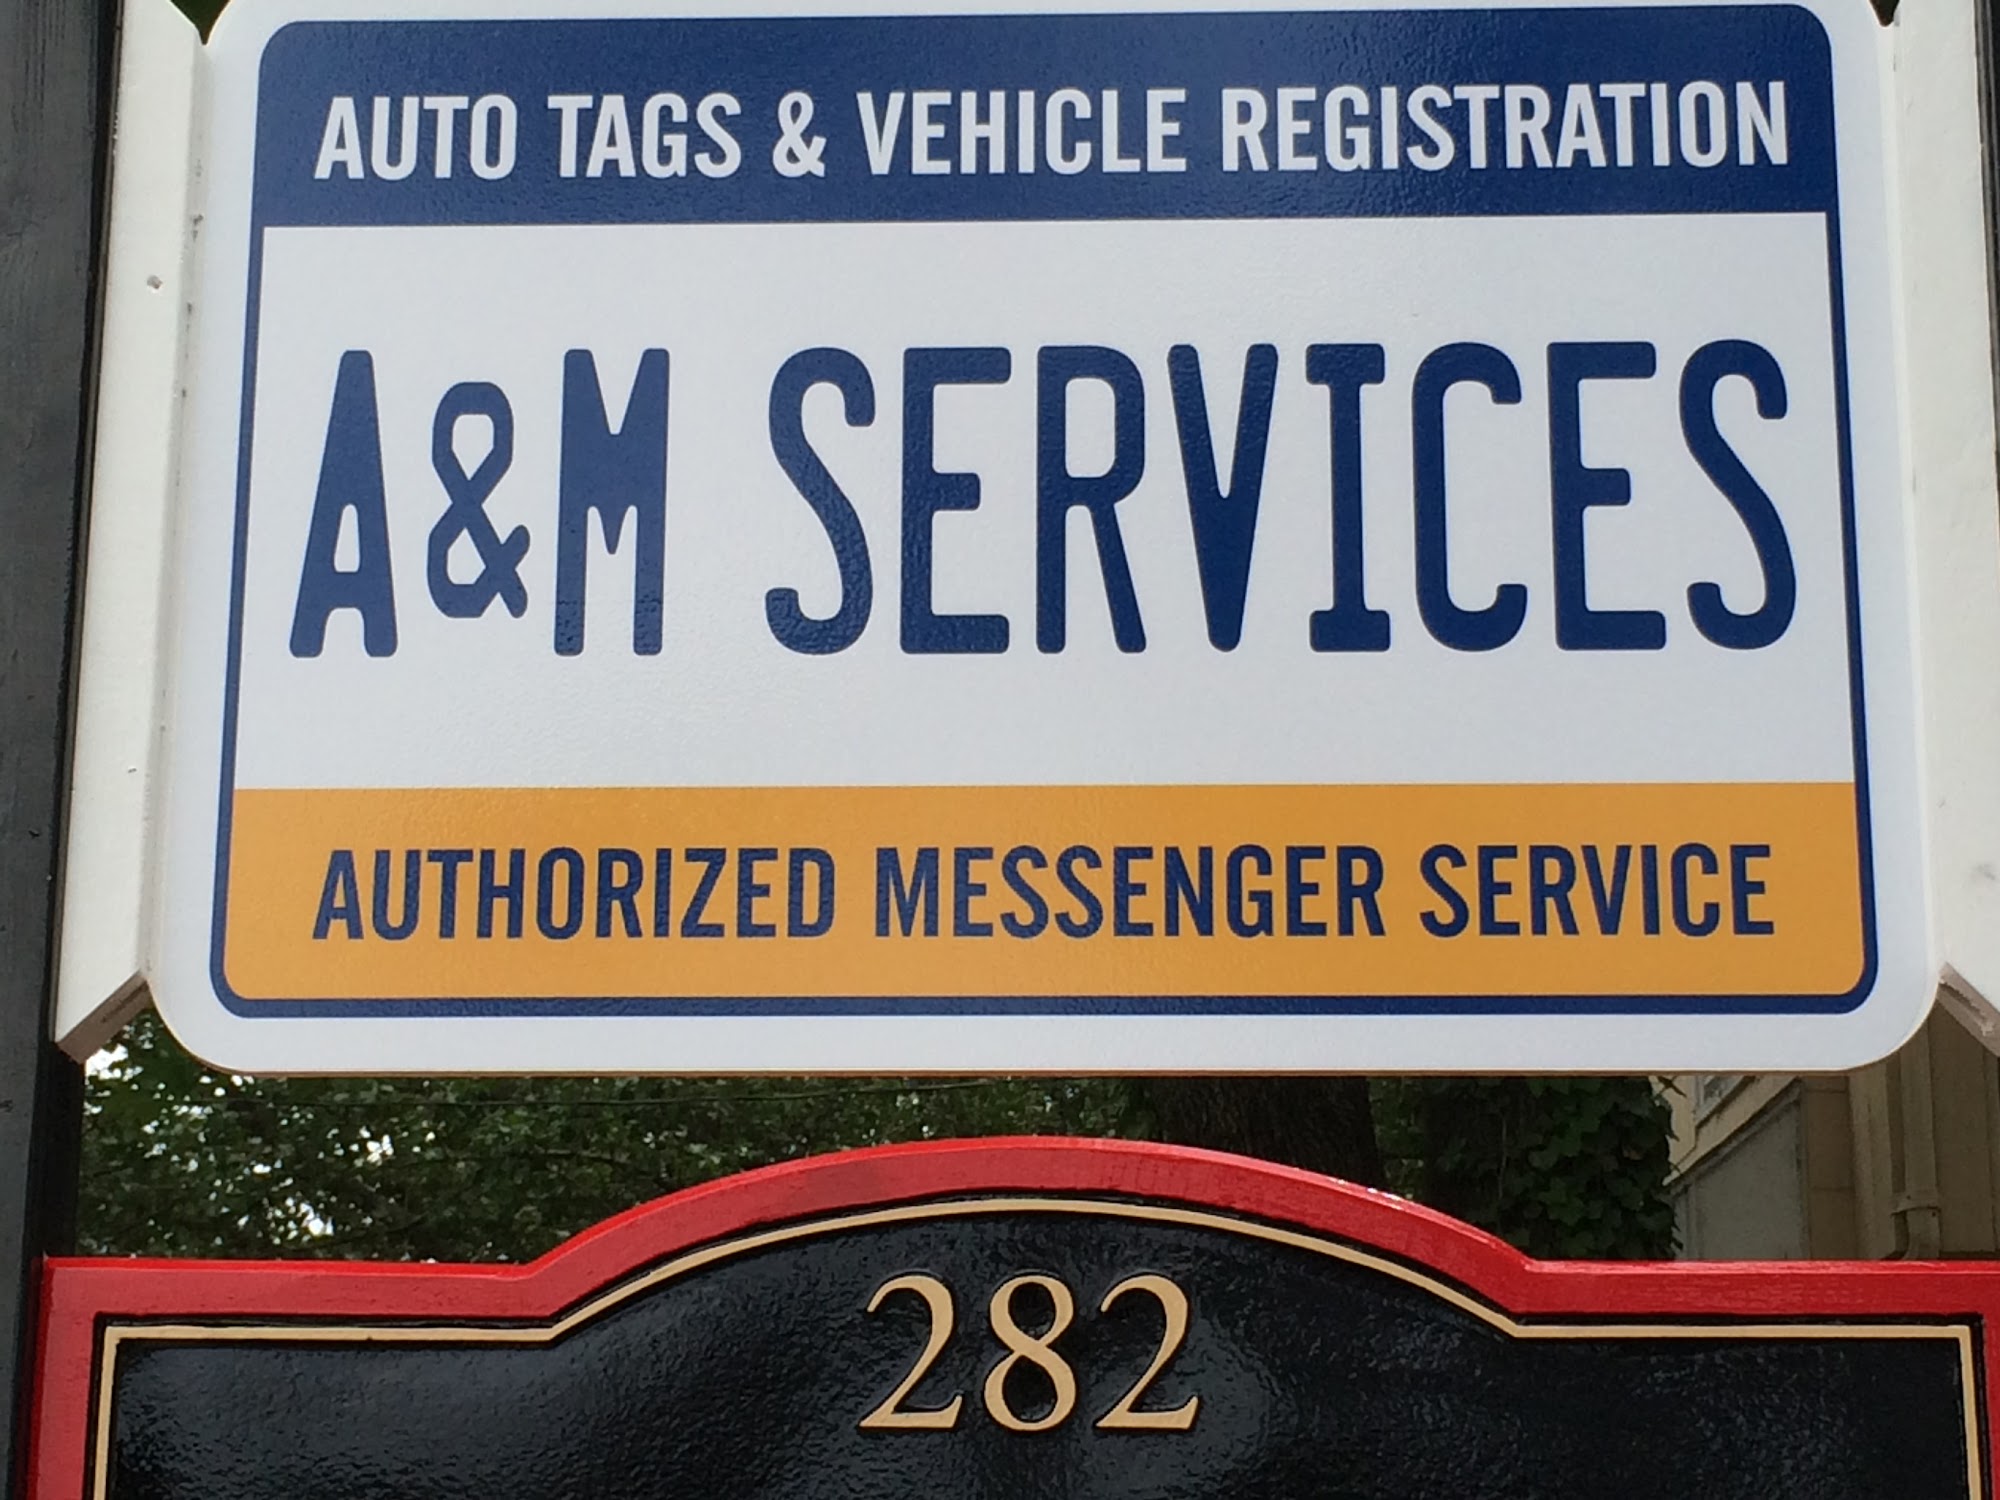 A & M Services